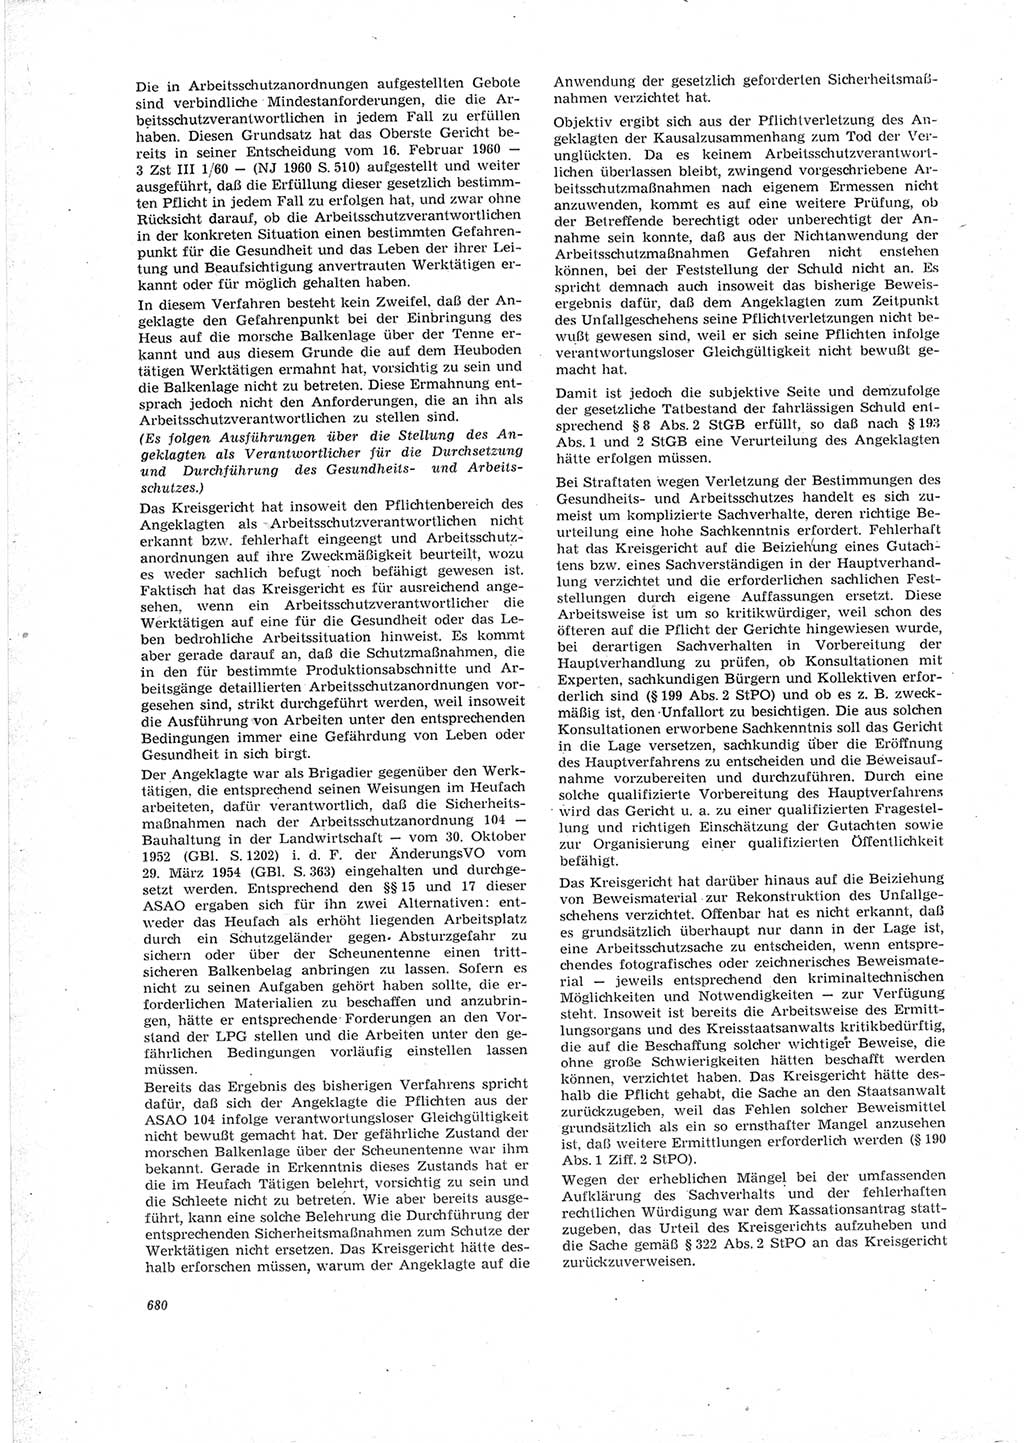 Neue Justiz (NJ), Zeitschrift für Recht und Rechtswissenschaft [Deutsche Demokratische Republik (DDR)], 23. Jahrgang 1969, Seite 680 (NJ DDR 1969, S. 680)